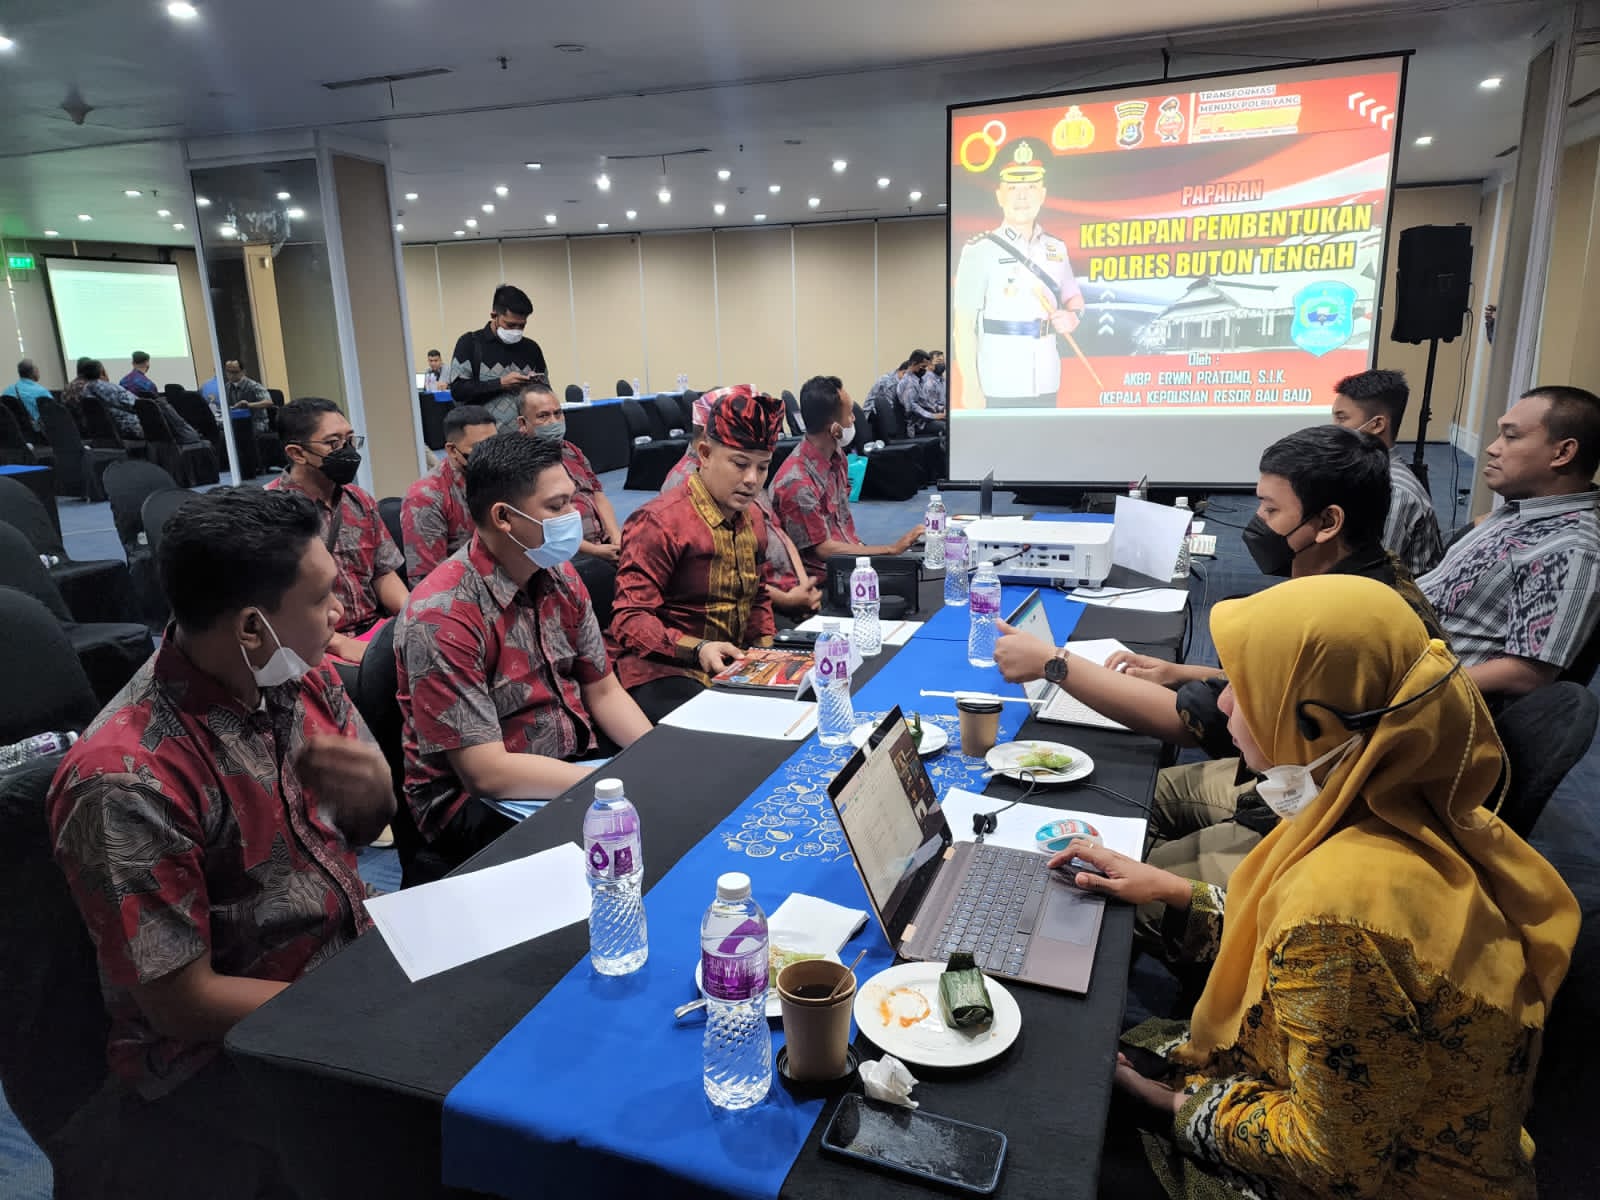 Kapolres Baubau, AKBP Erwin Pratomo, SIK saat presentasi kesiapan pembentukan Polres Buteng di Jakarta. (Foto: Humas Polres Baubau)